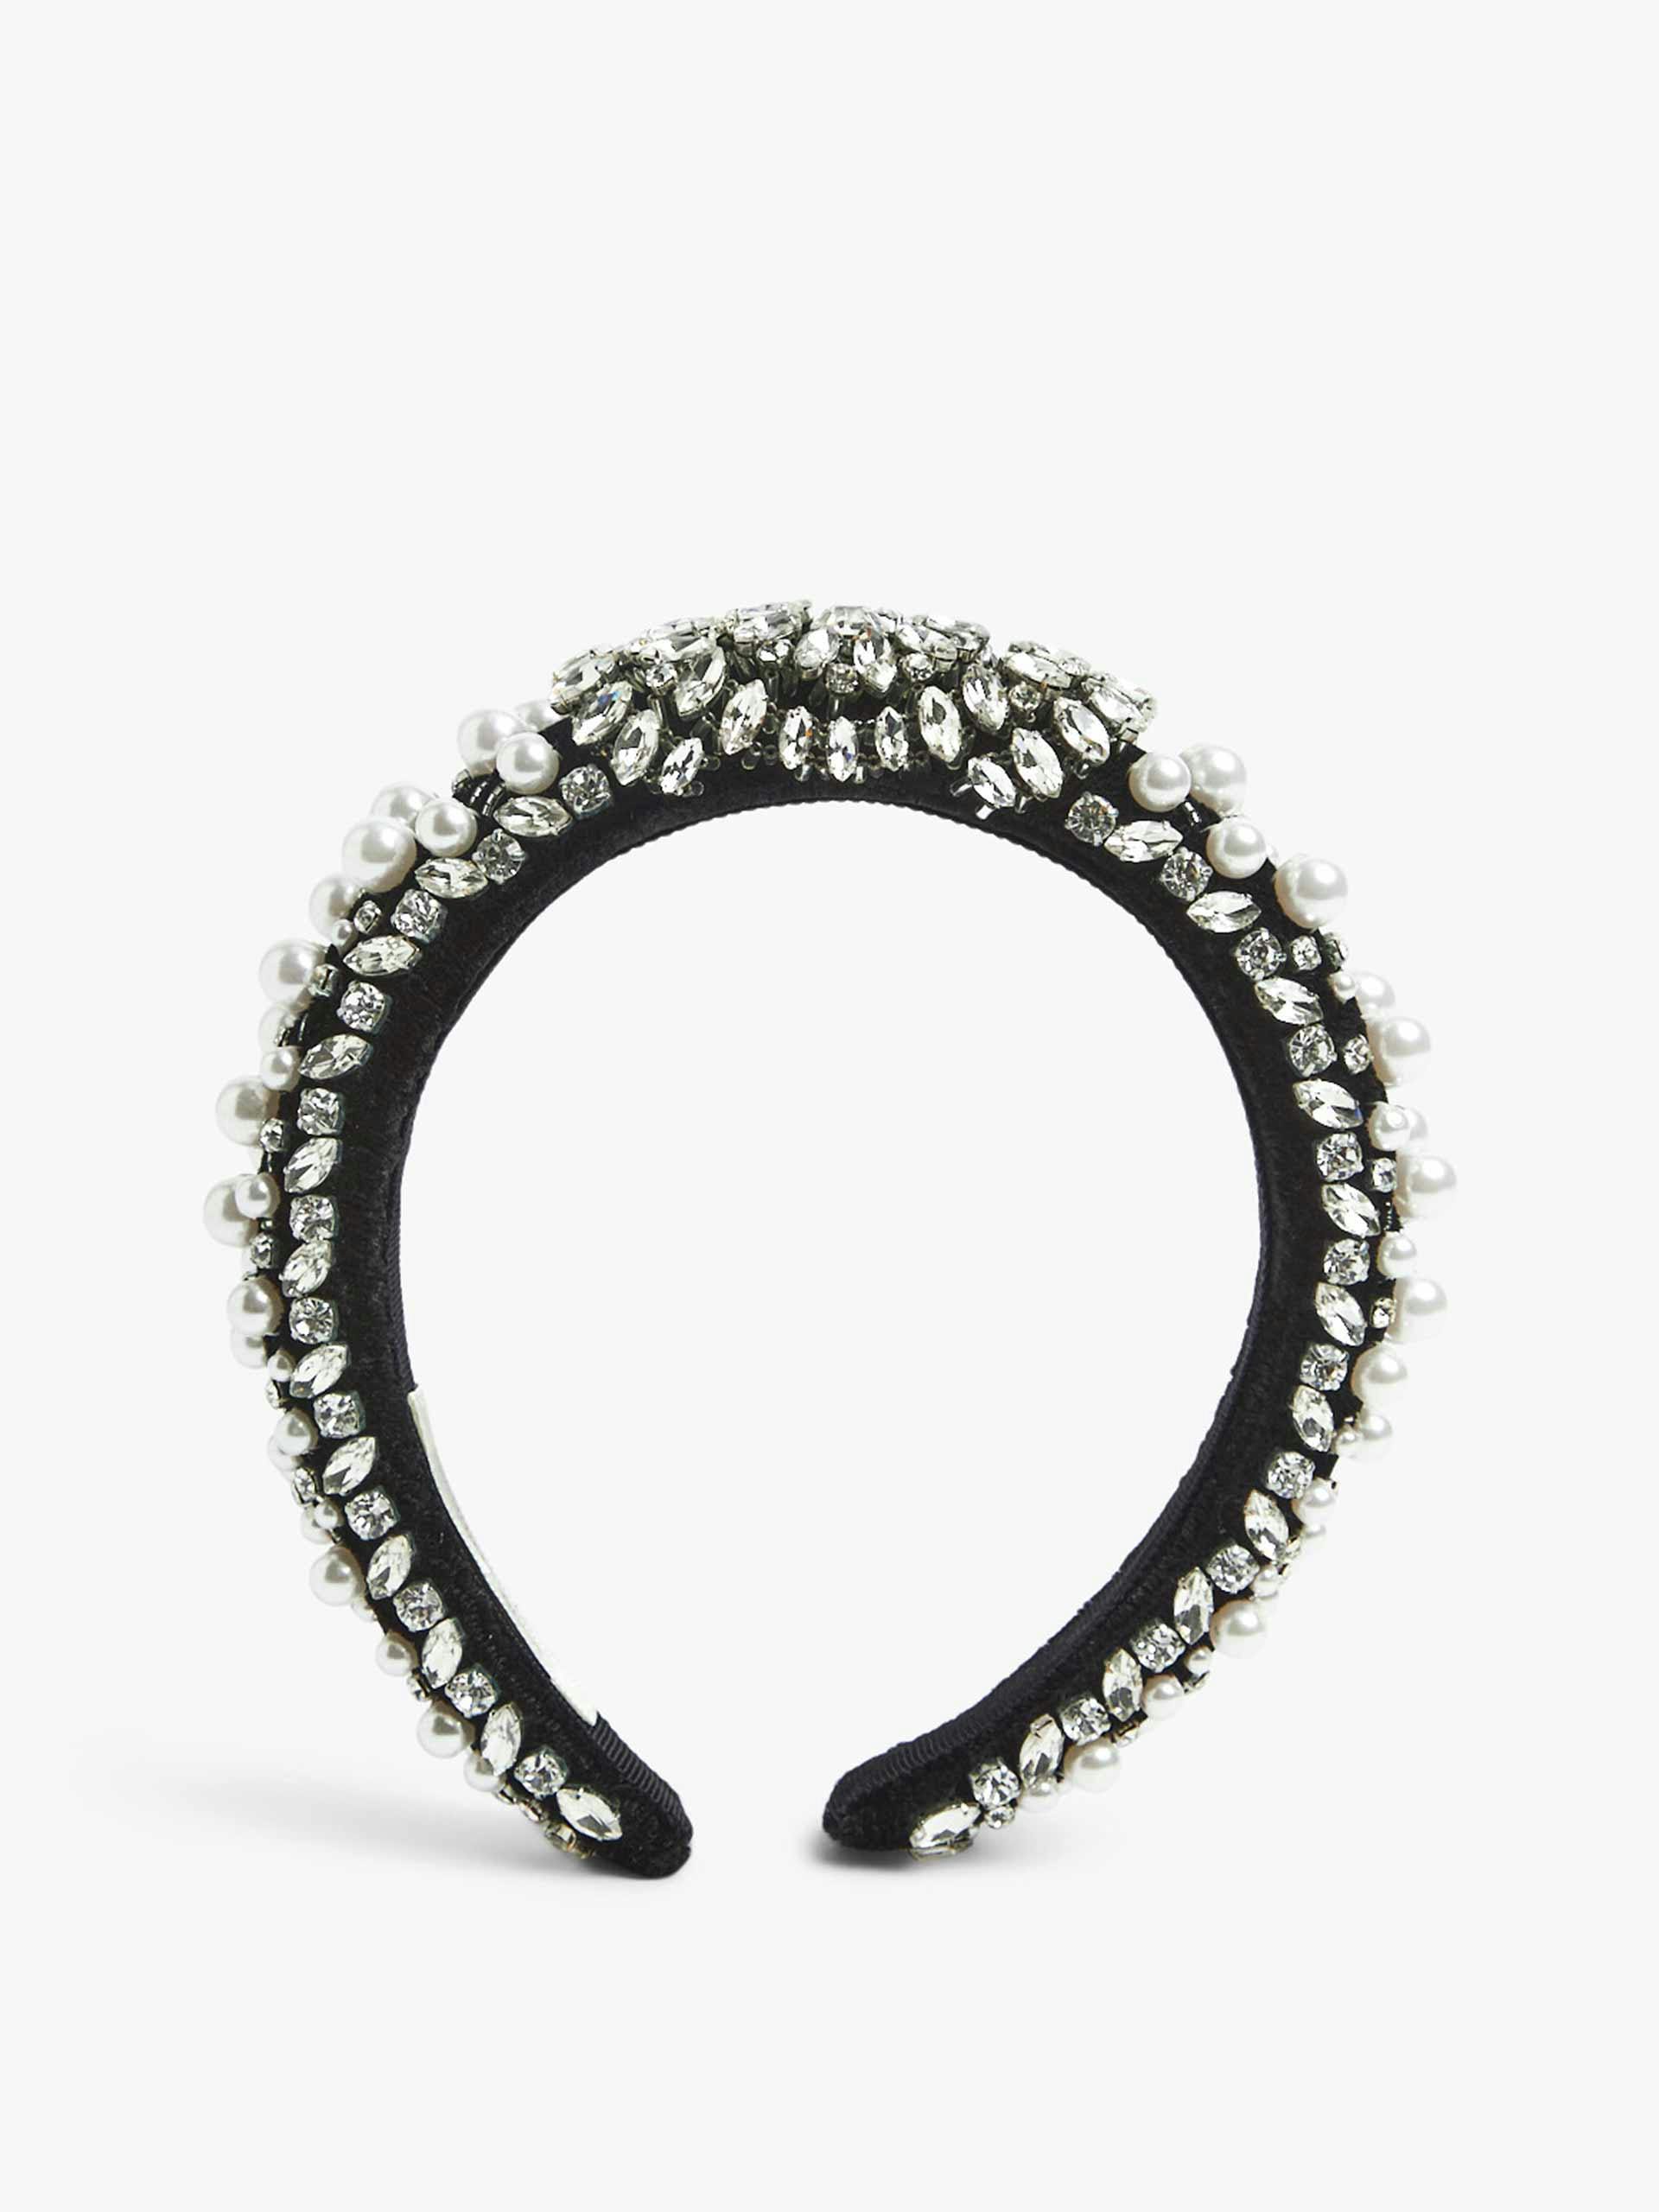 Black velvet embellished headband